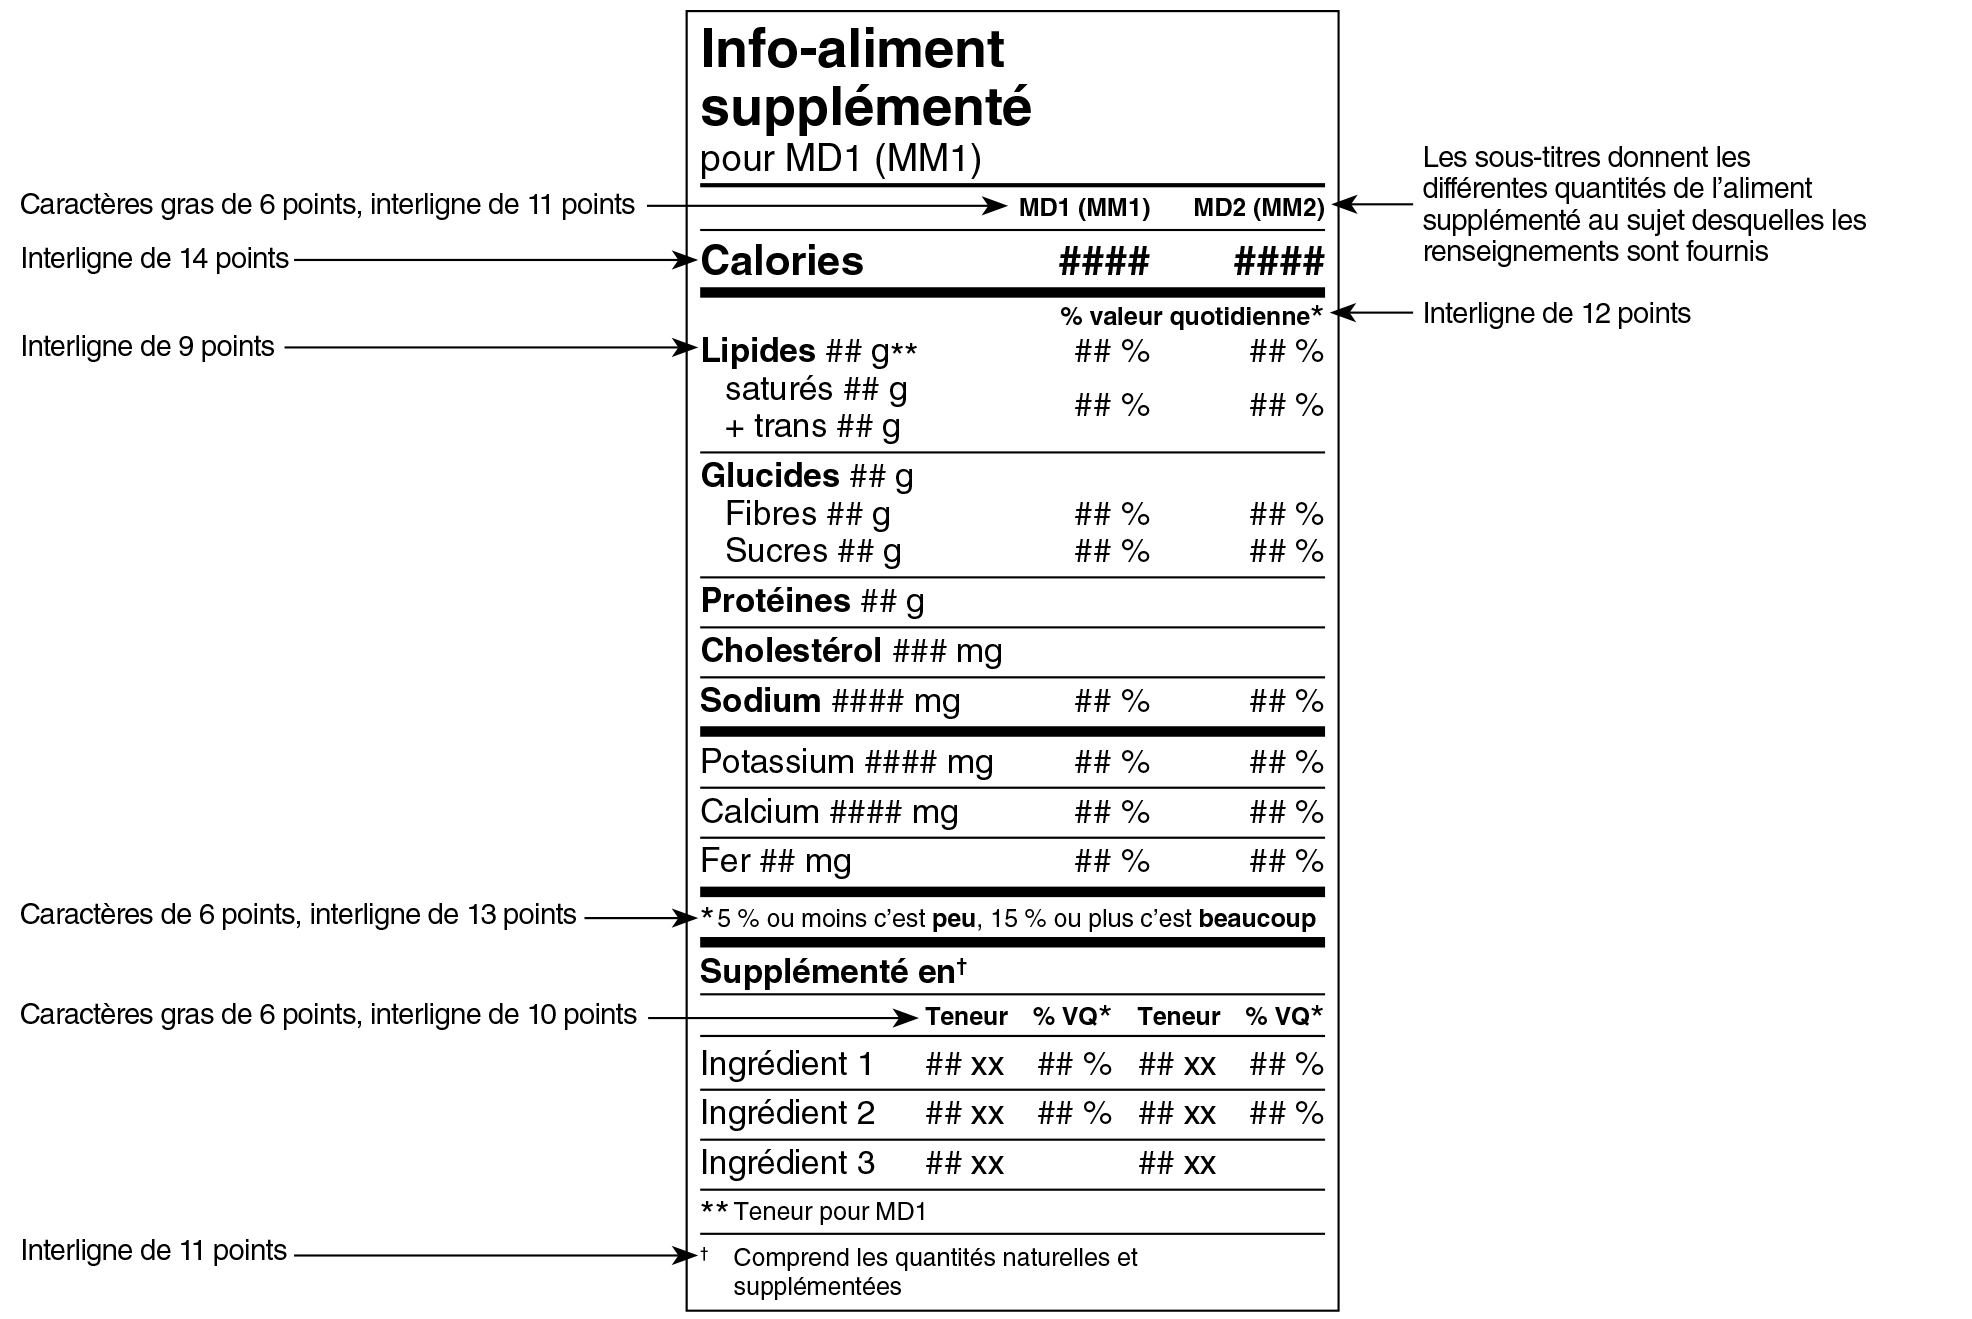 Modèle double français du tableau des renseignements sur les aliments supplémentés avec indications. Version texte ci-dessous.